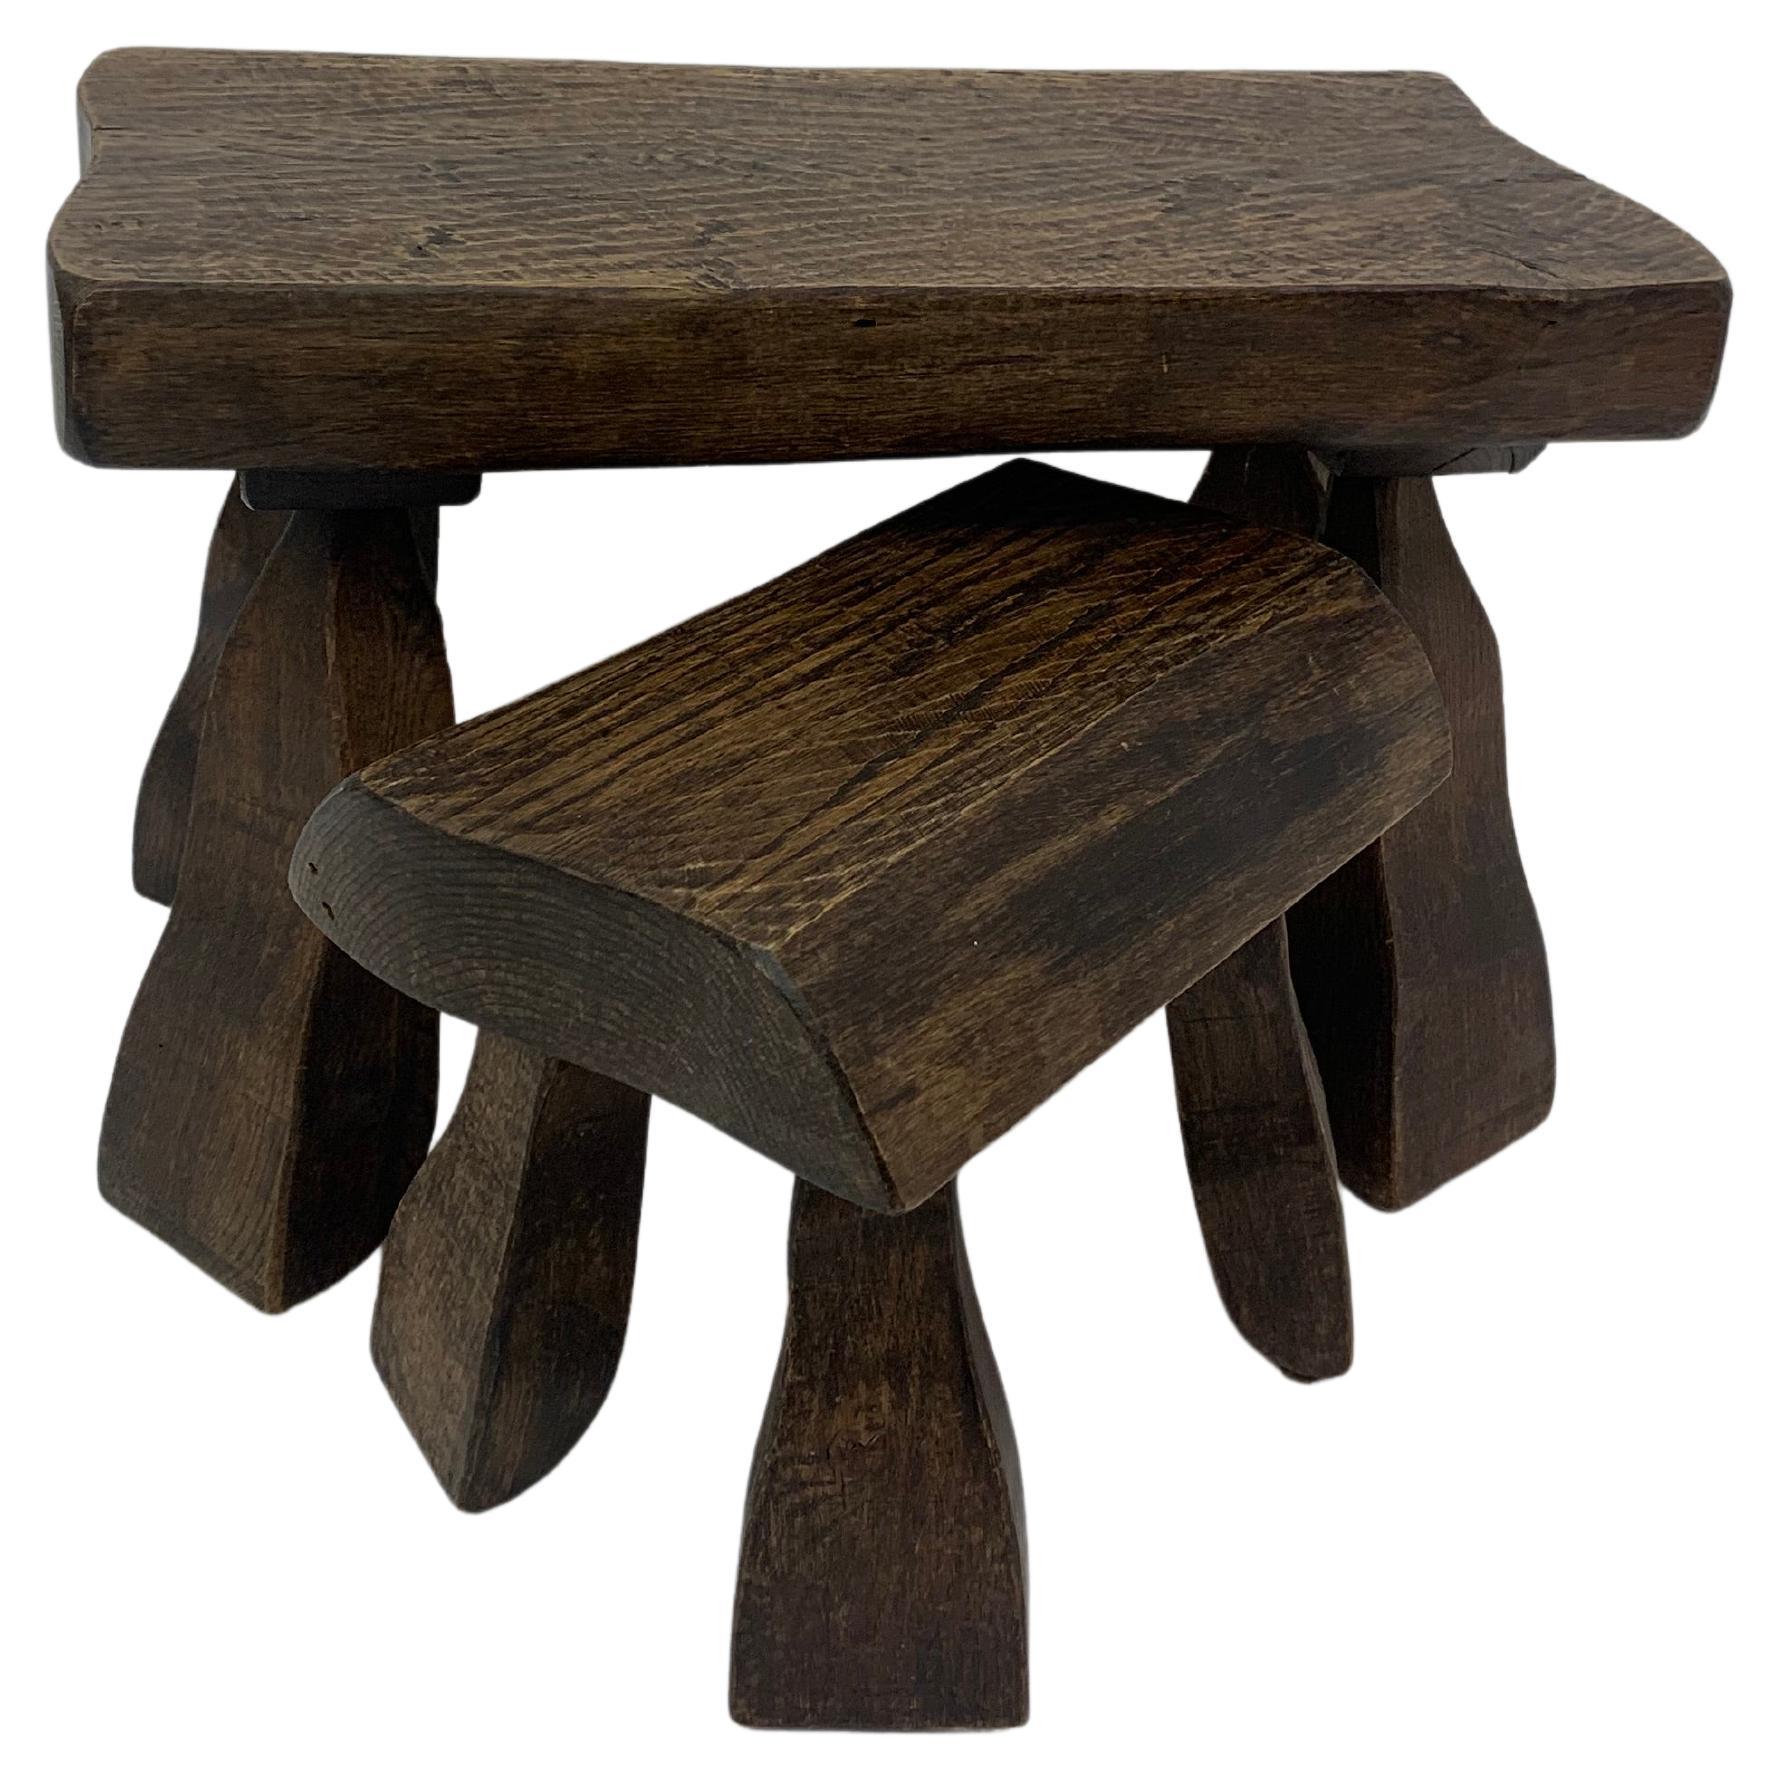 Set of 2 Solid Wood Brutalist Side Tables, 1970’s